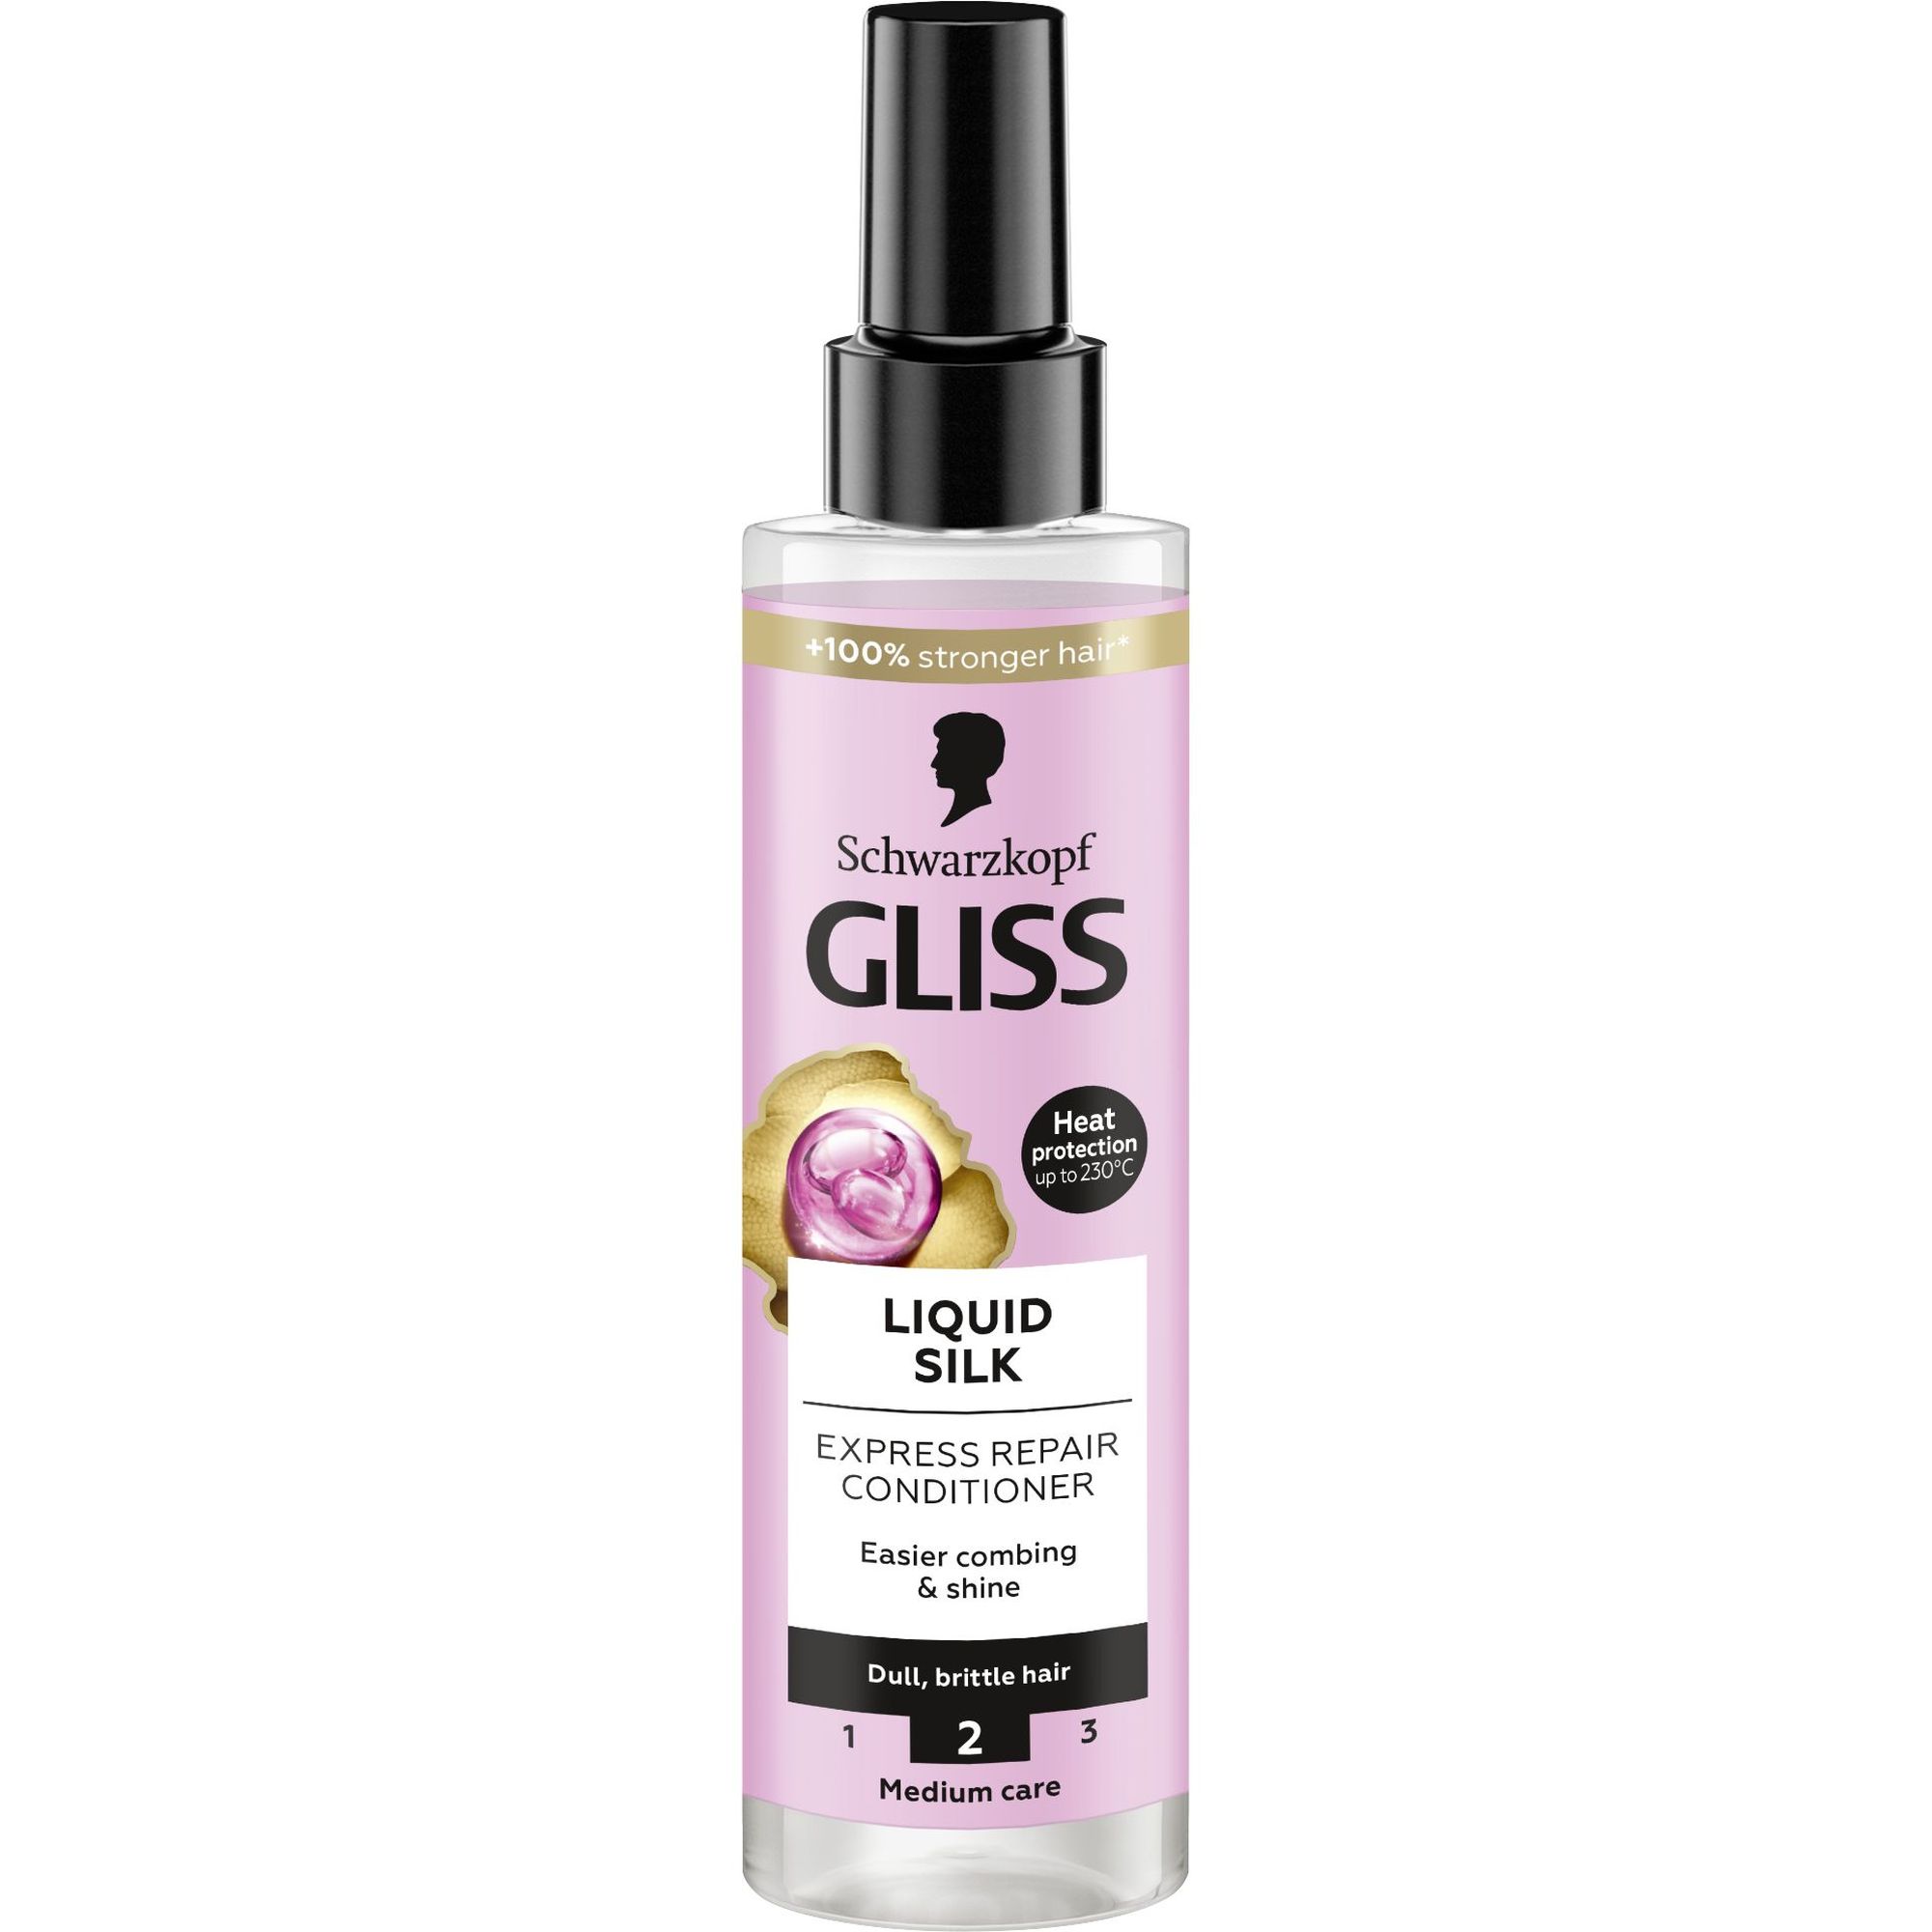 Экспресс-кондиционер Gliss Liquid Silk для ломких и тусклых волос 200 мл - фото 1